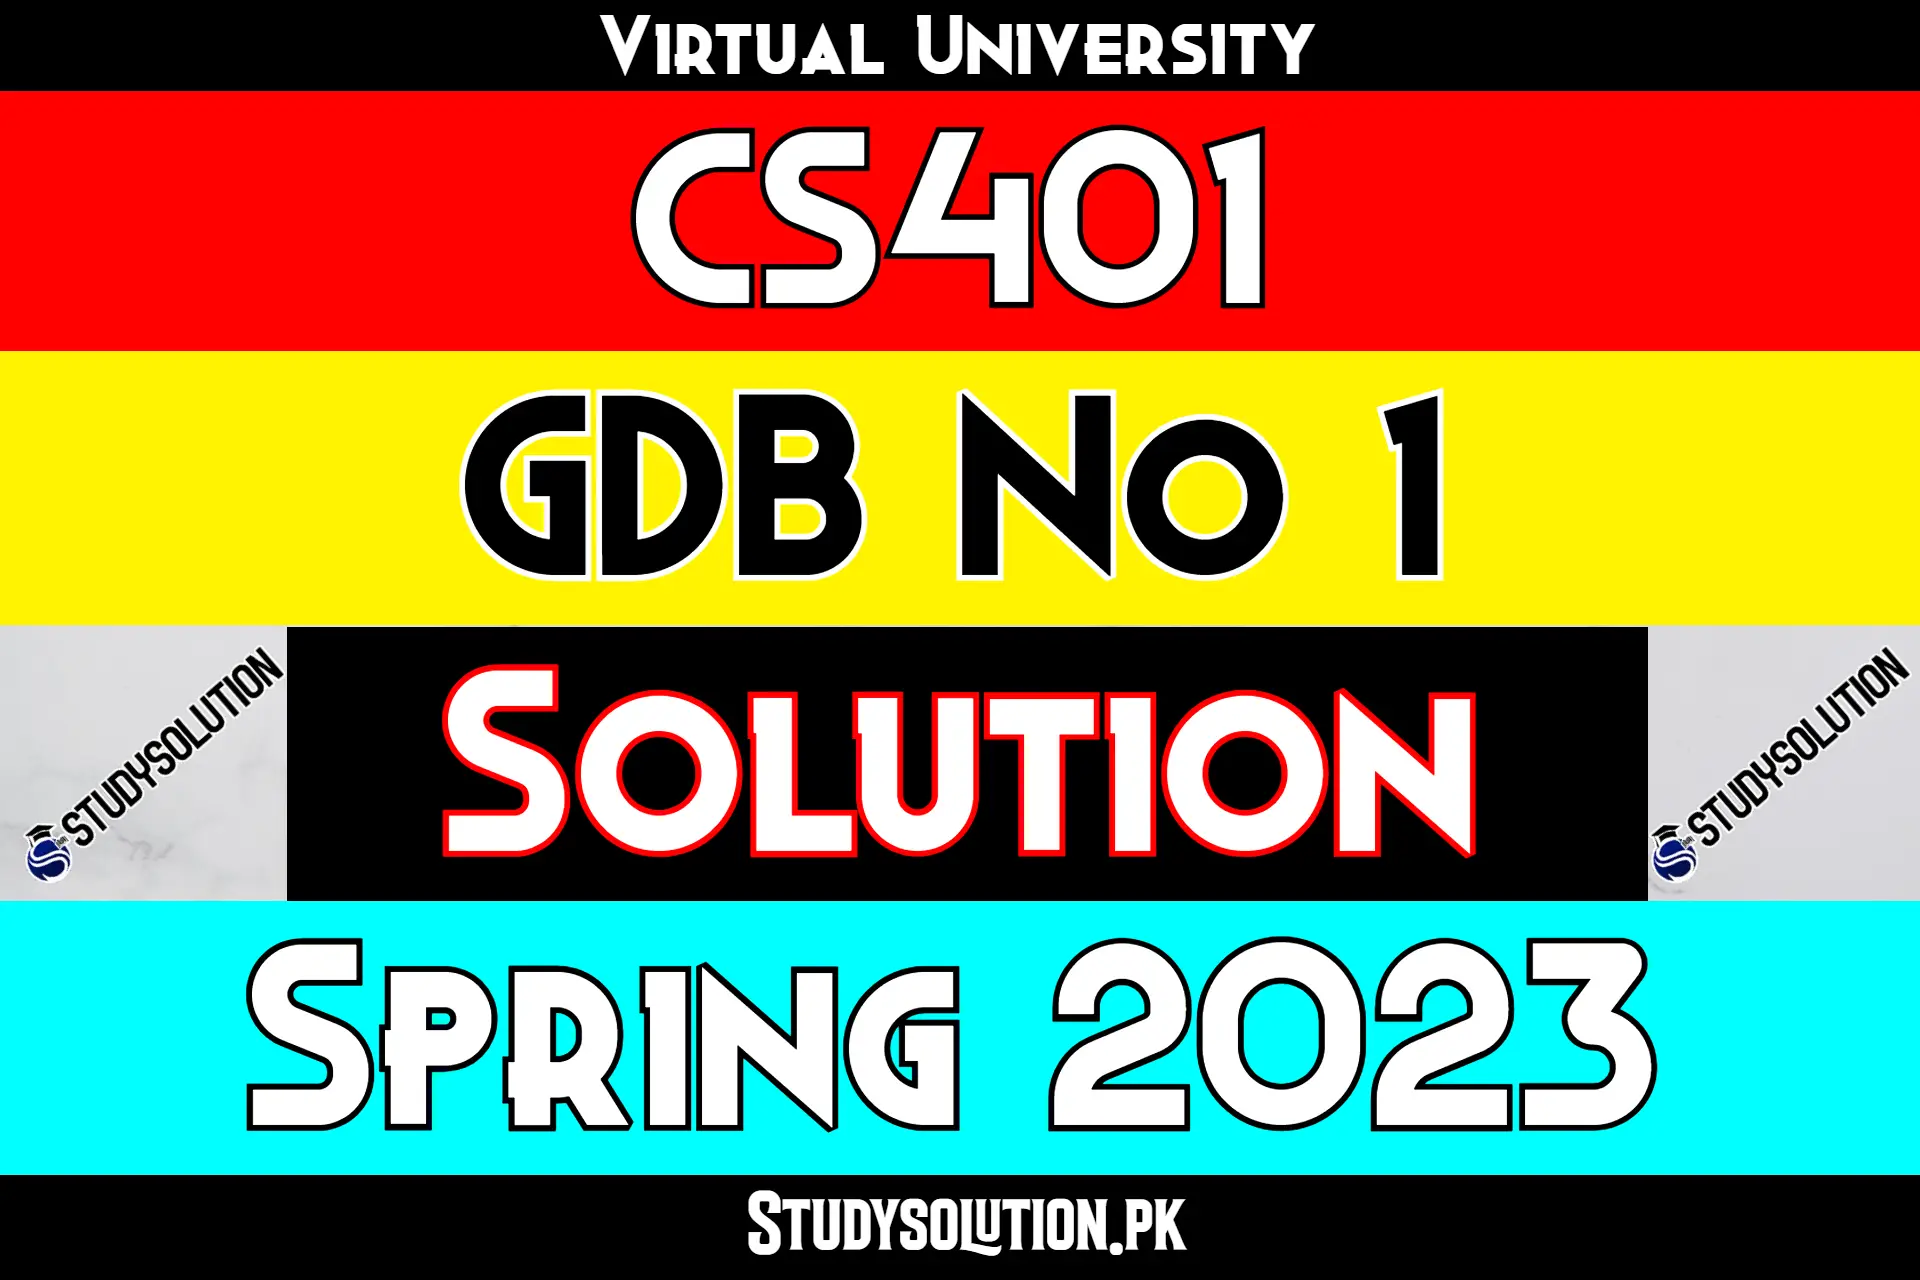 CS401 GDB No 1 Solution Spring 2023